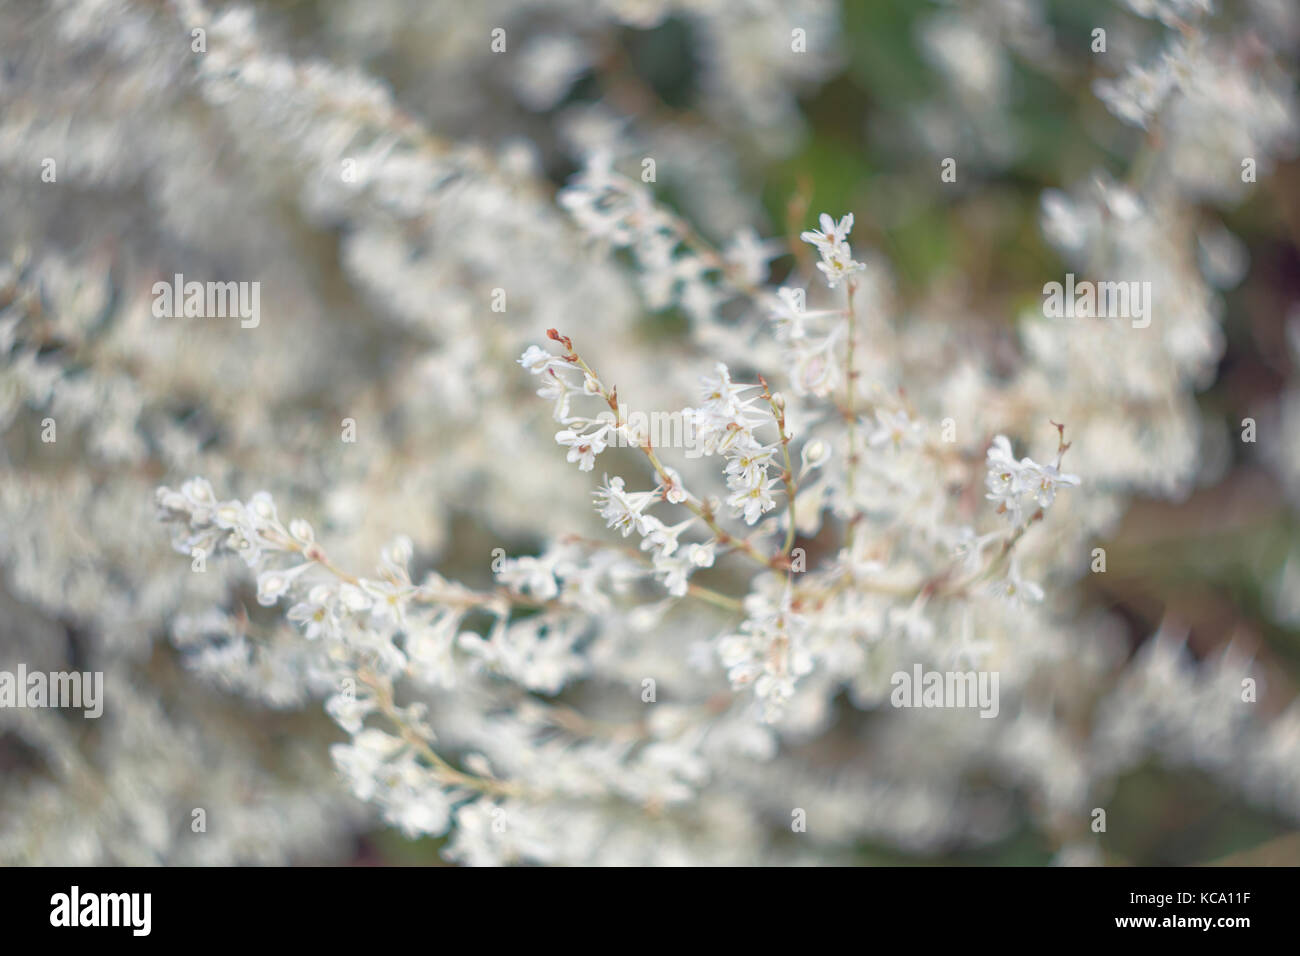 Fallopia, white dreamy flowers Stock Photo